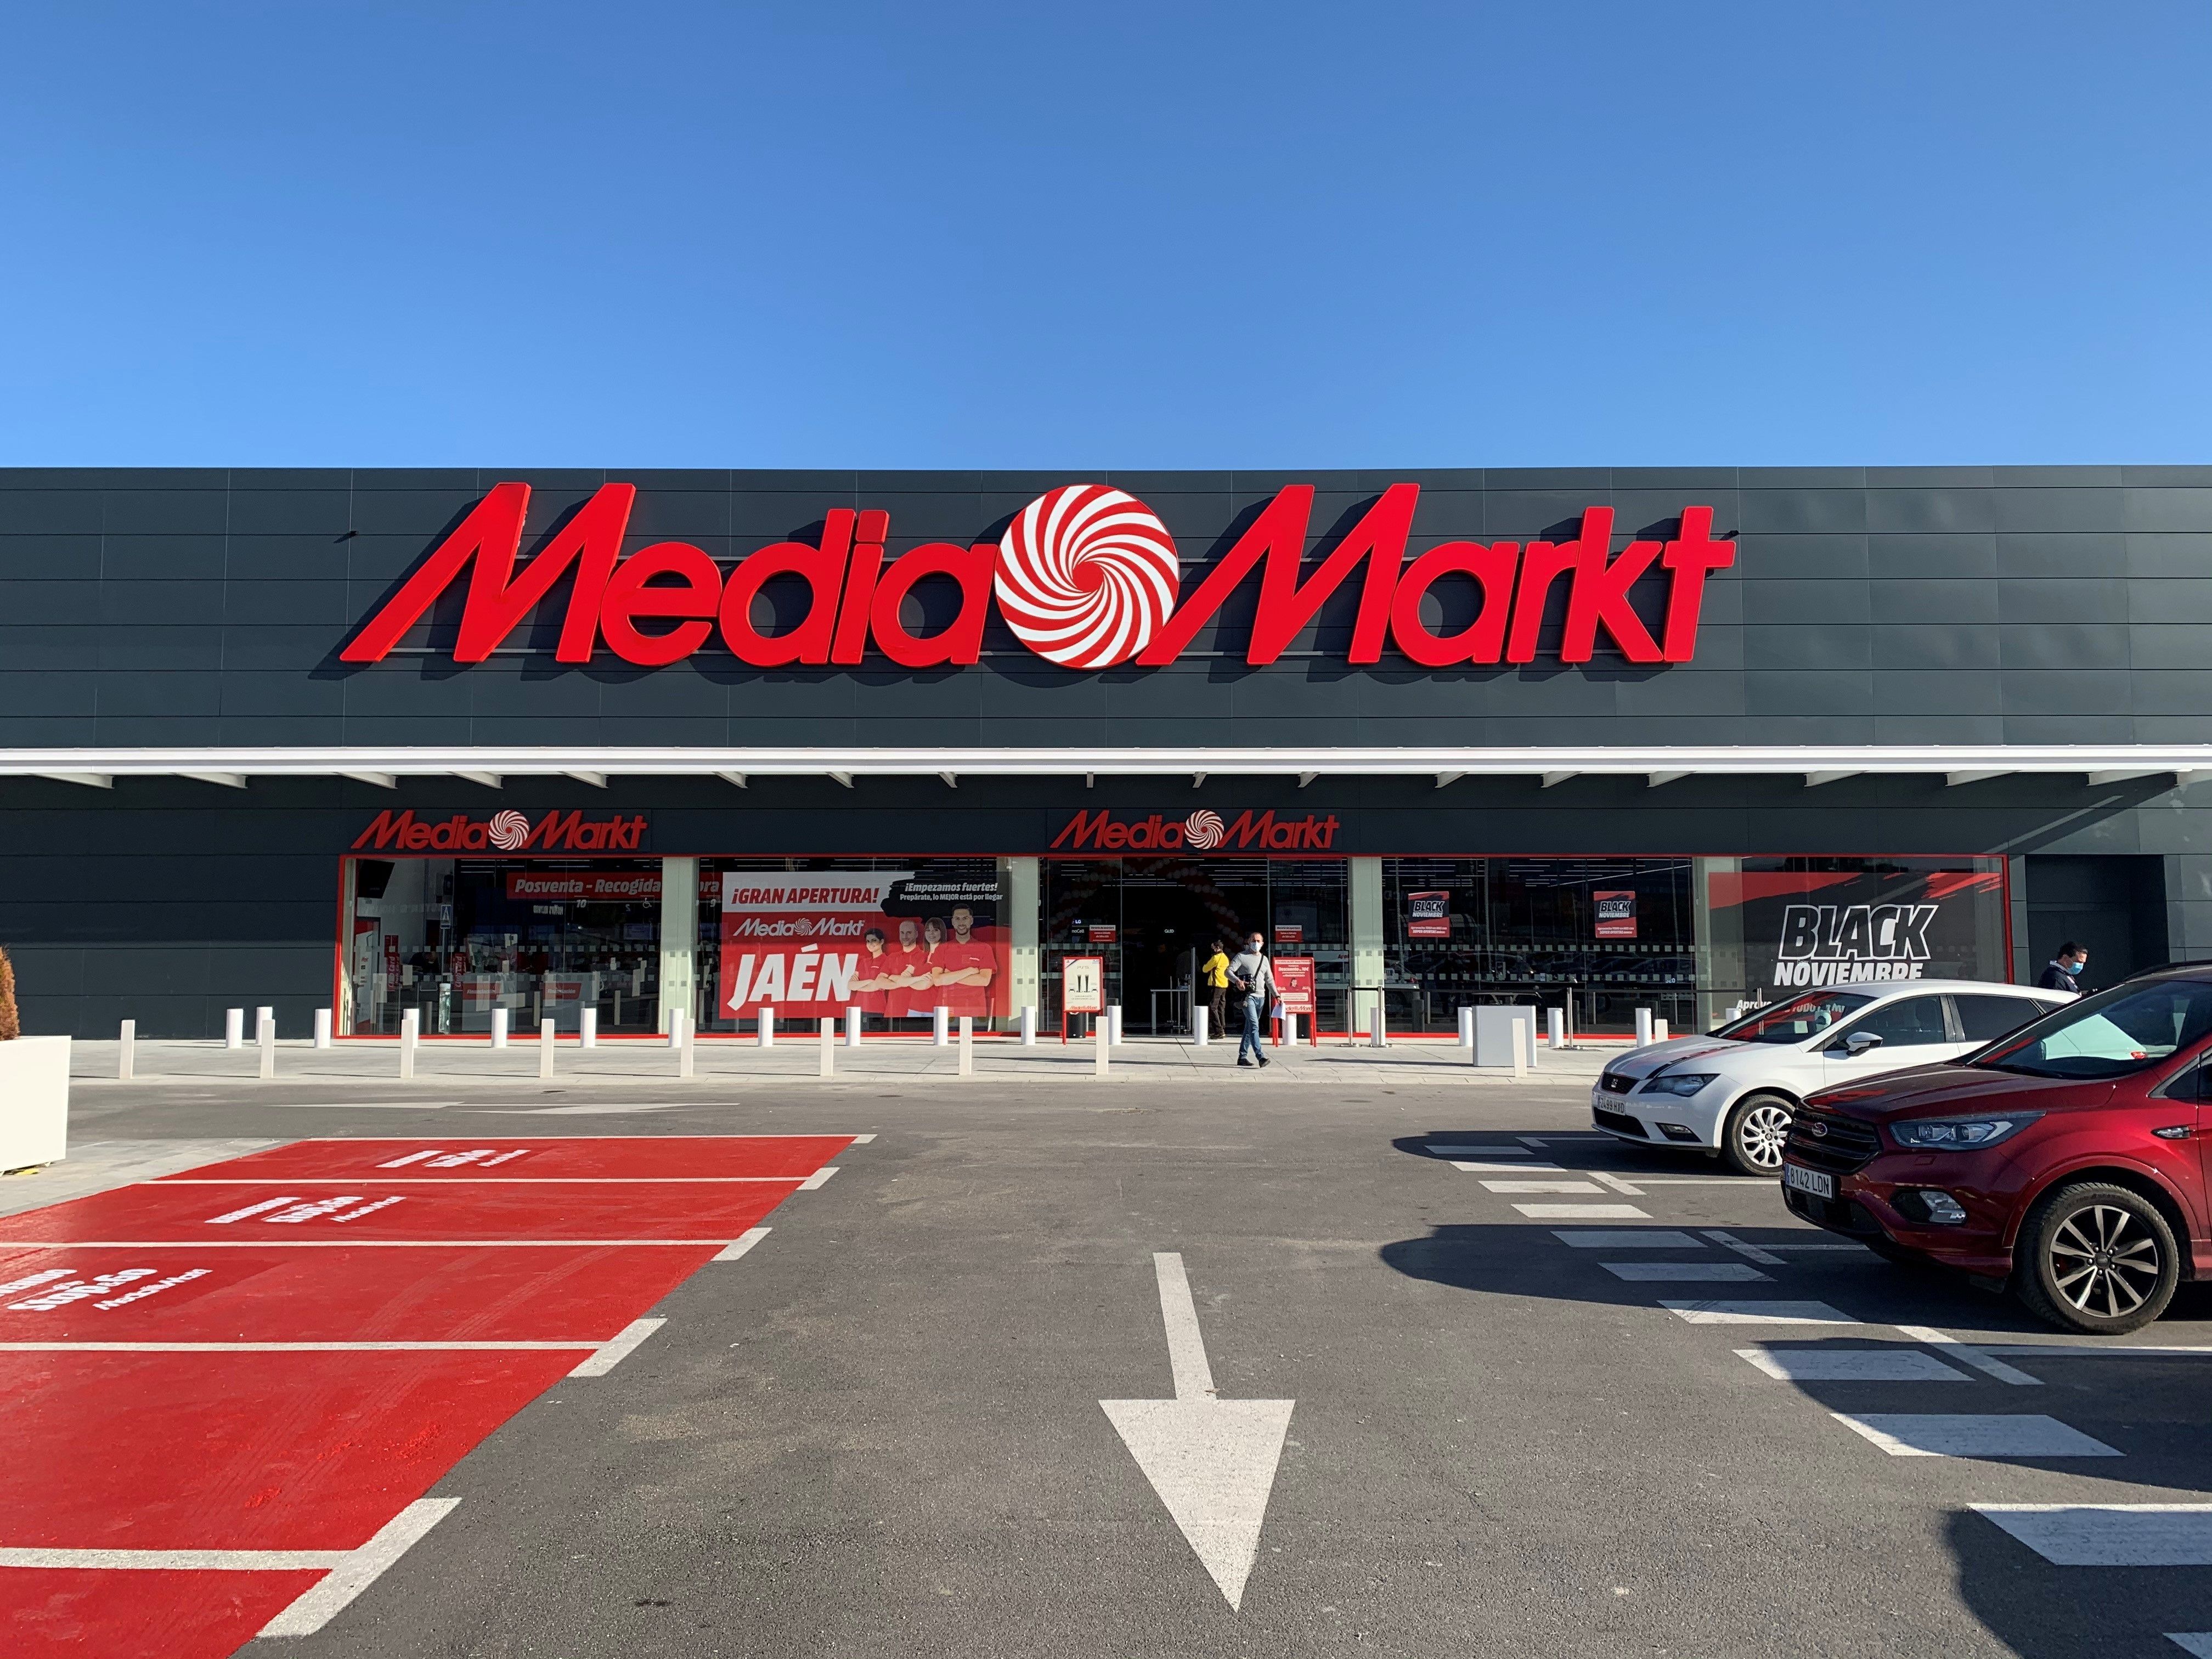 MediaMarkt y el seguro de Domestic & General a los clientes